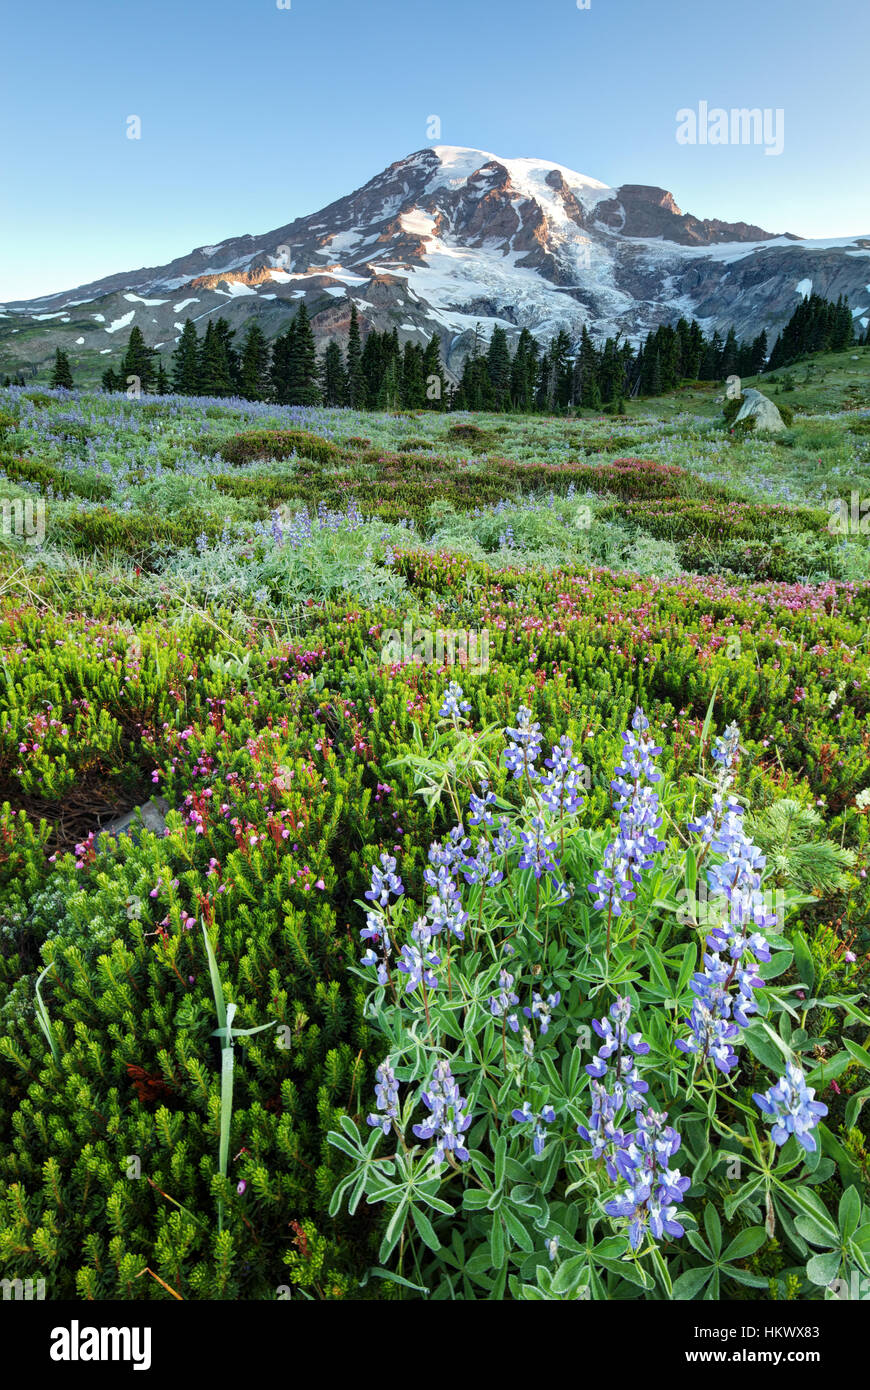 Mount Rainier and subalpine wildflower meadow, Paradise, Mount Rainier National Park, Washington Stock Photo